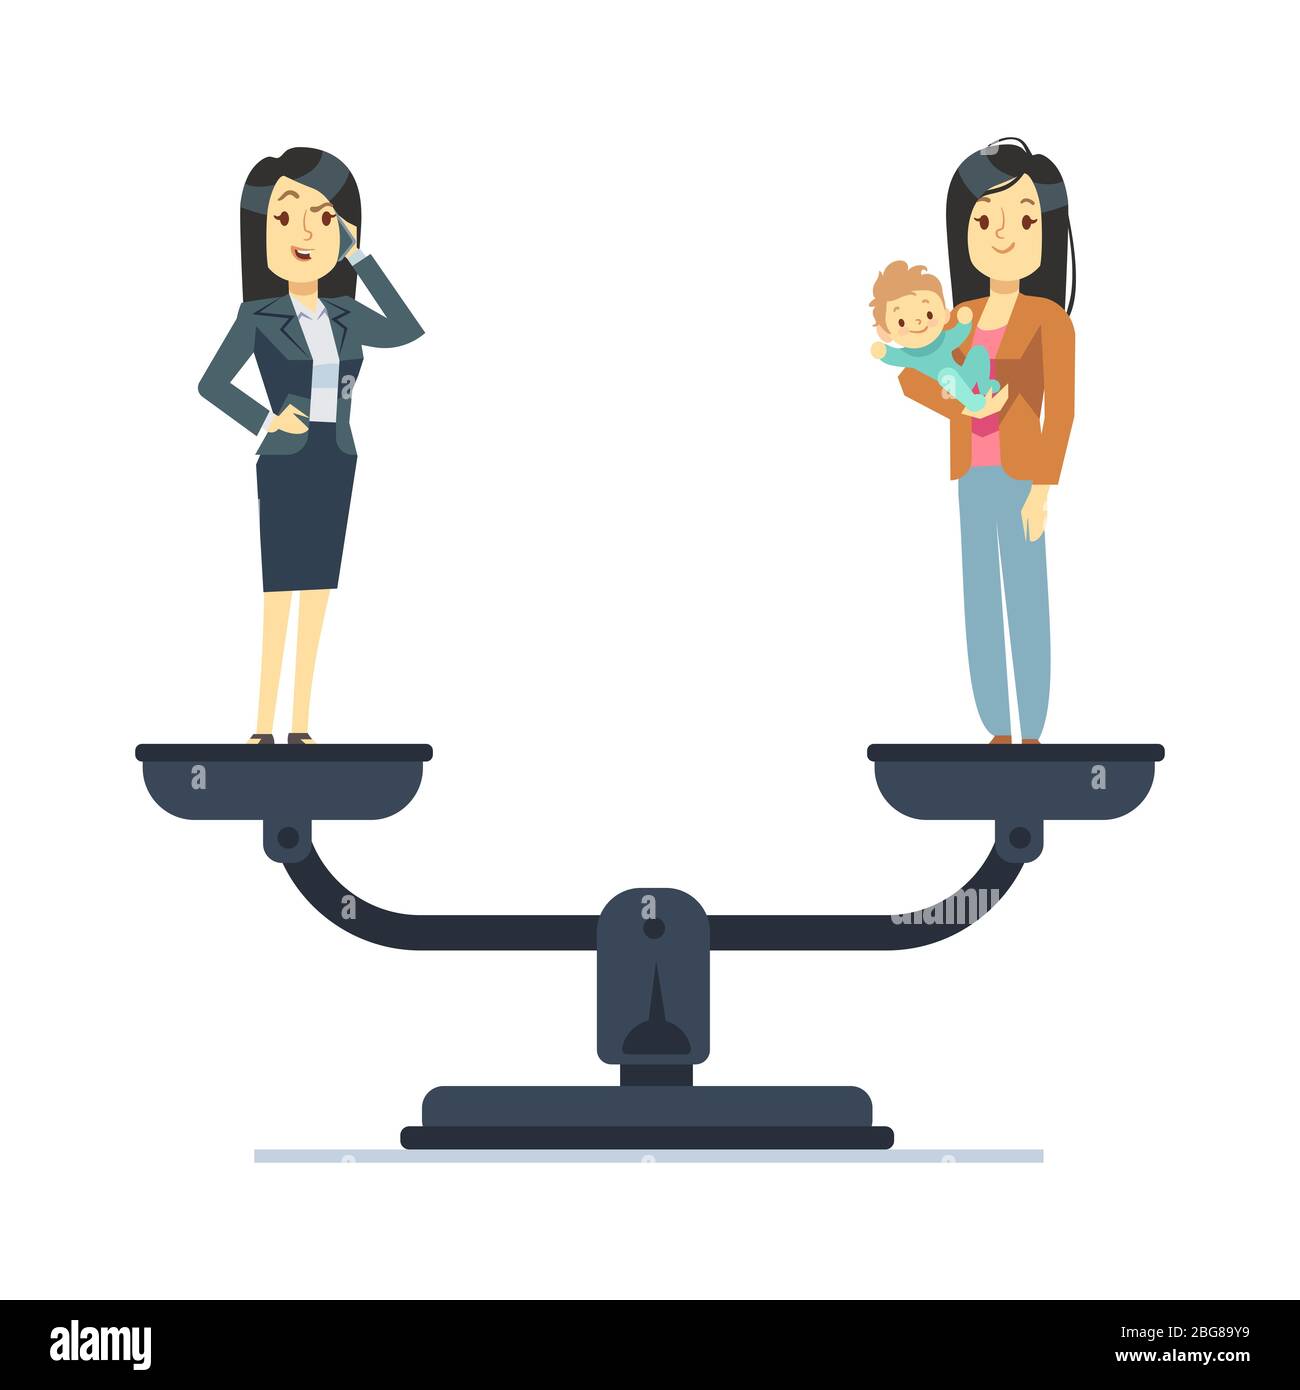 El Arte del Equilibrio Entre el Trabajo y la Vida Familiar - Una familia  Online